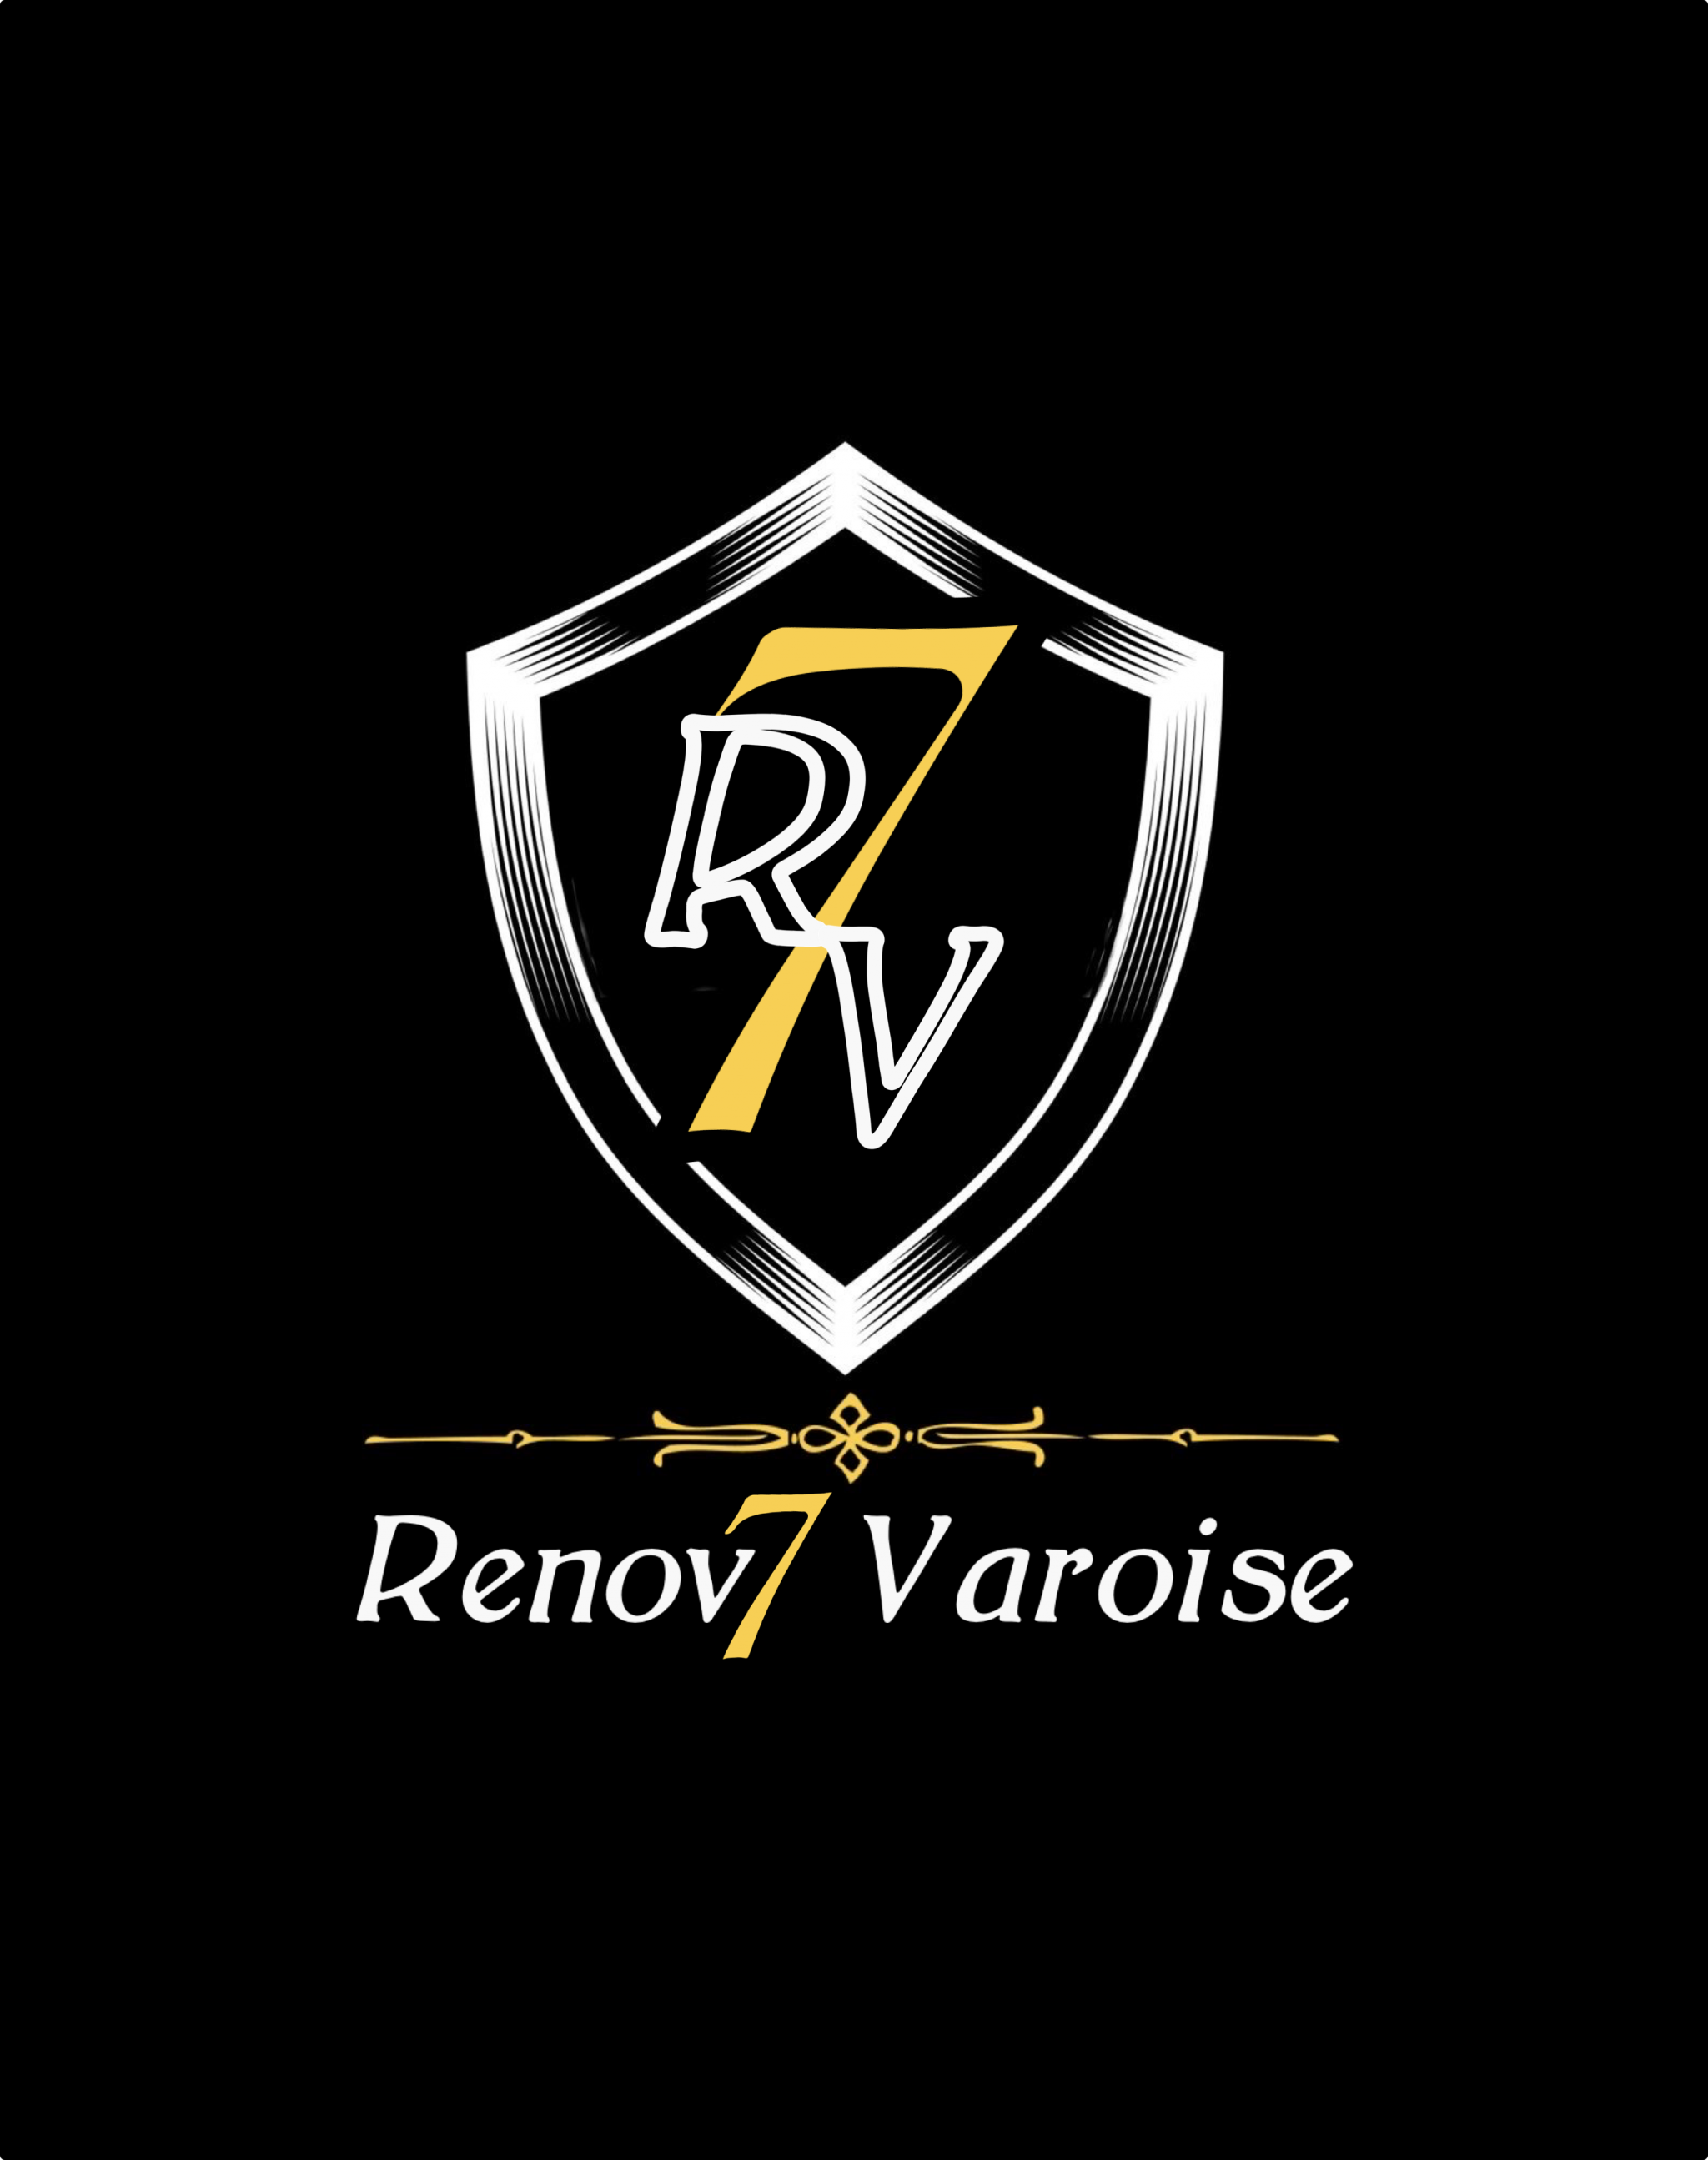 Logo de Renov7 varoise, société de travaux en Fourniture et pose parquets